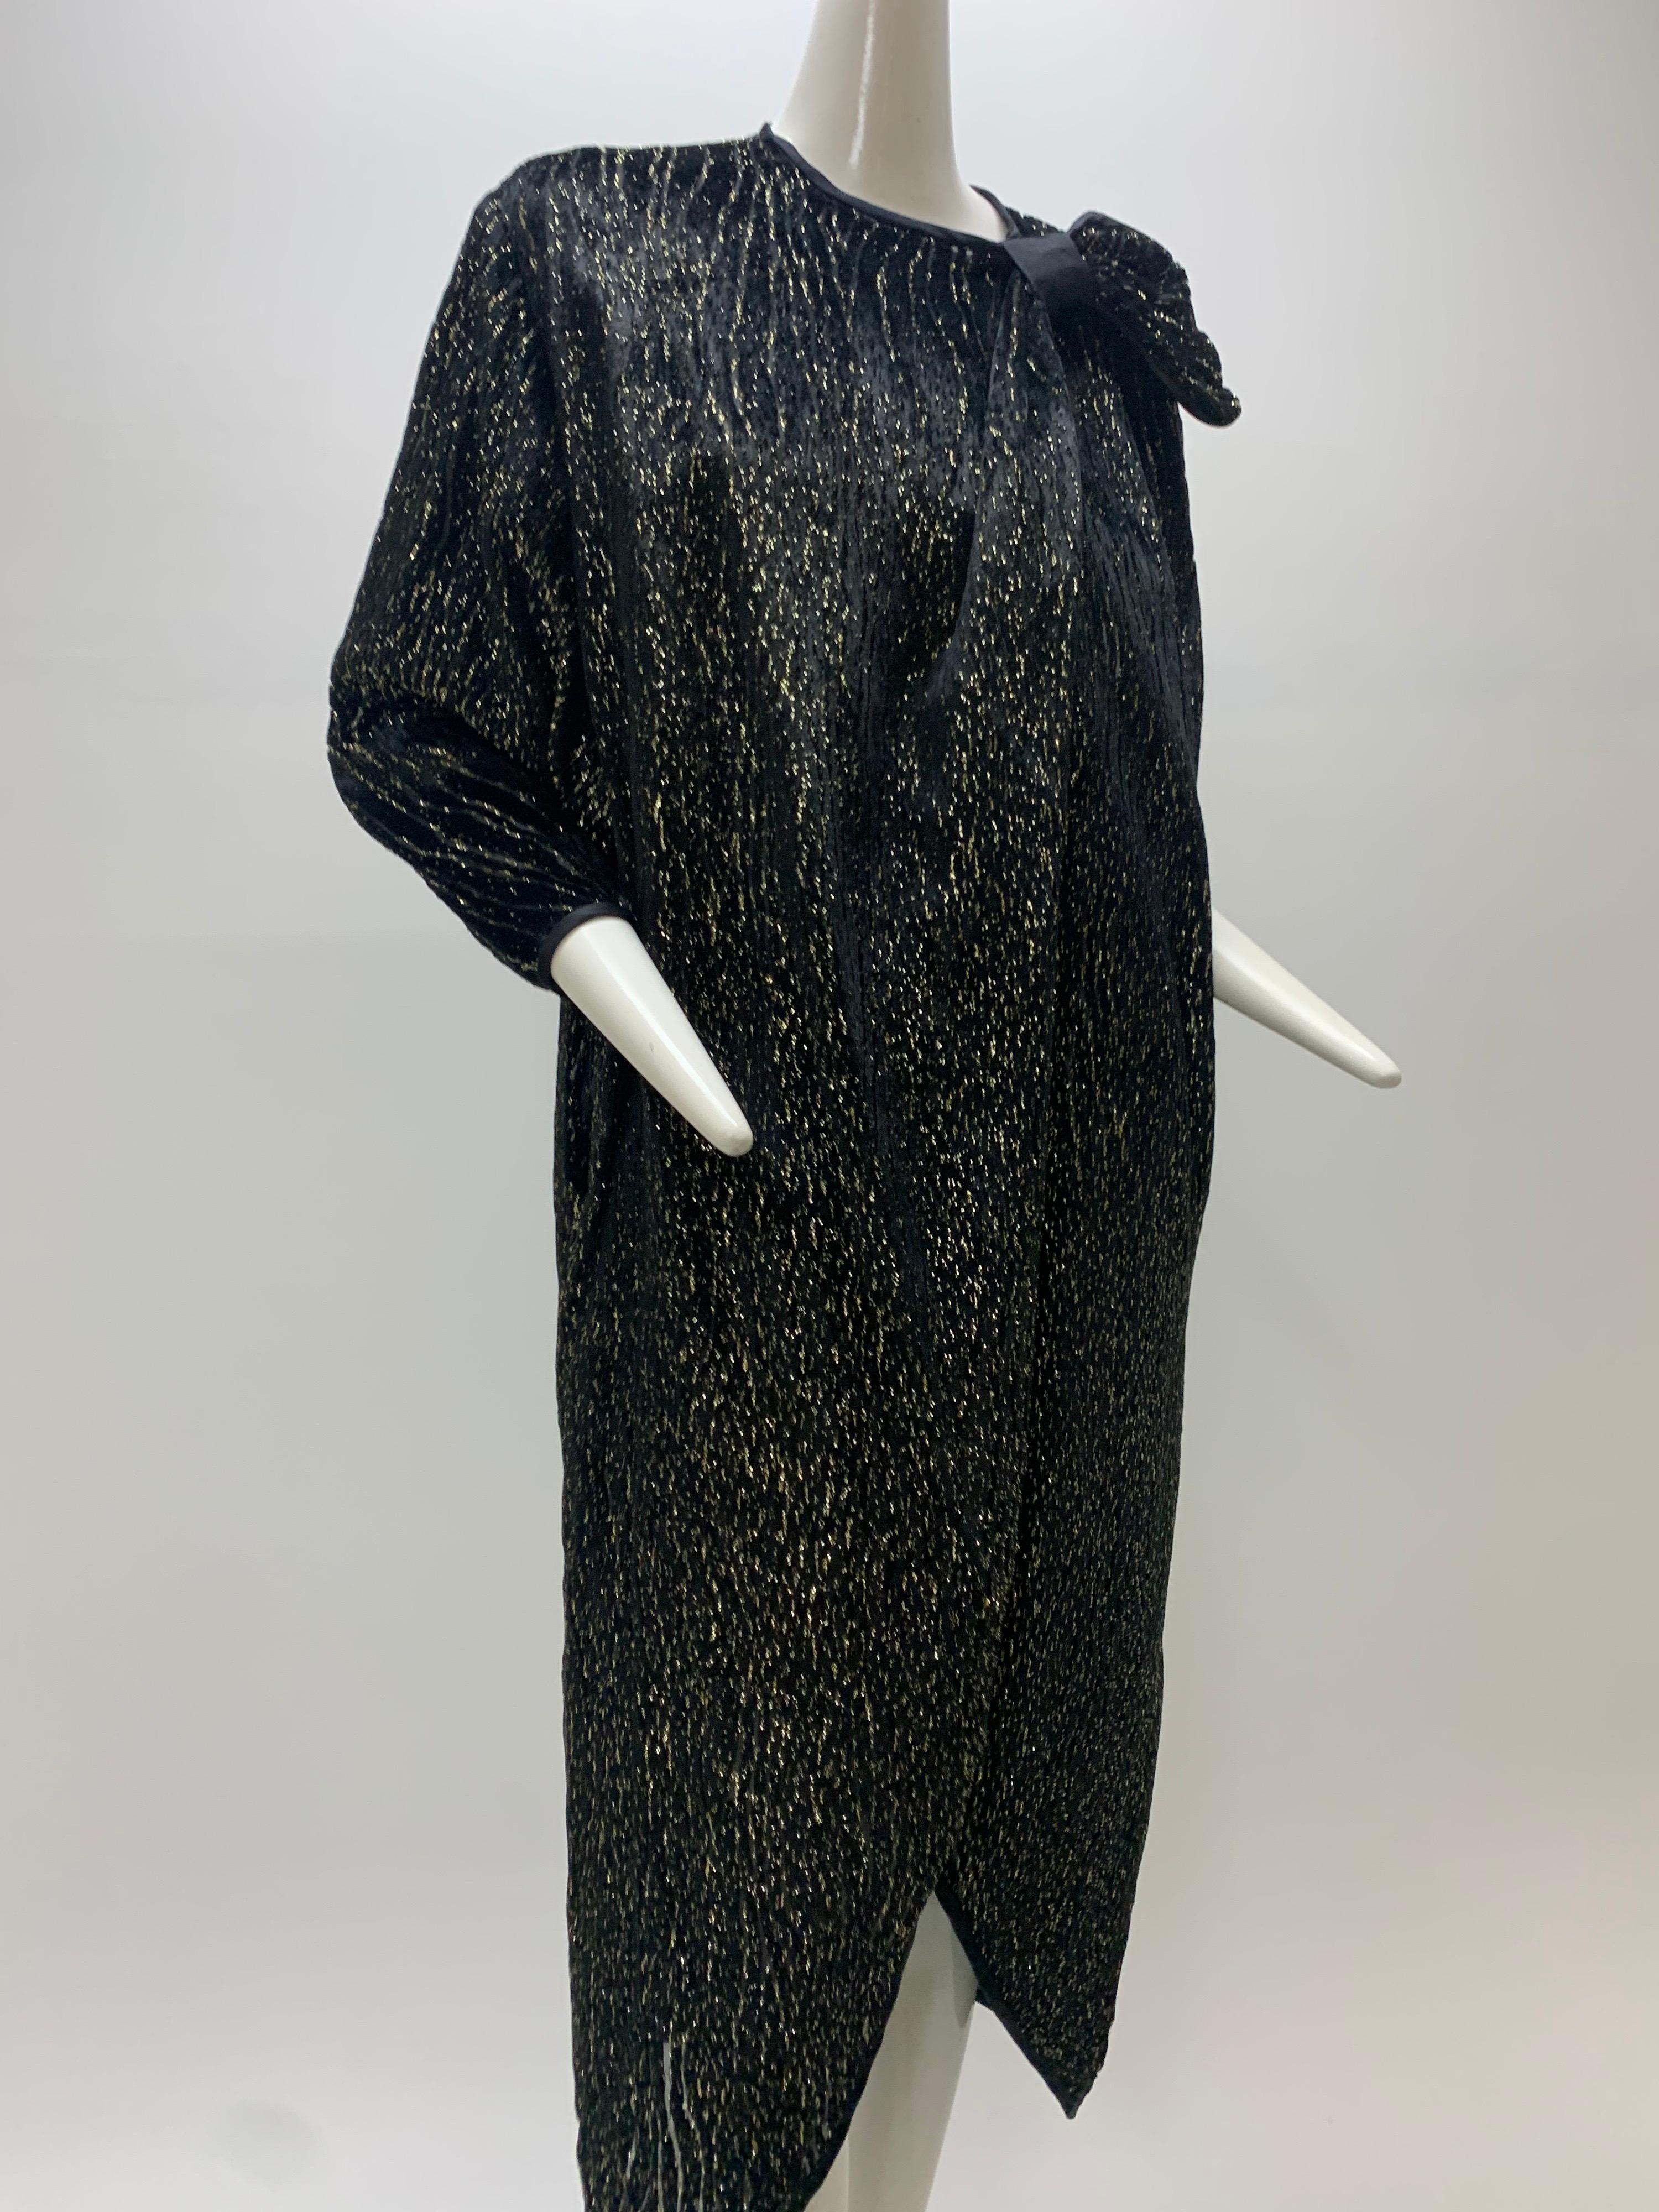 1980 Schiaparelli Black & Gold Woodgrain Velvet Side Tie Opera Coat or Dress For Sale 6